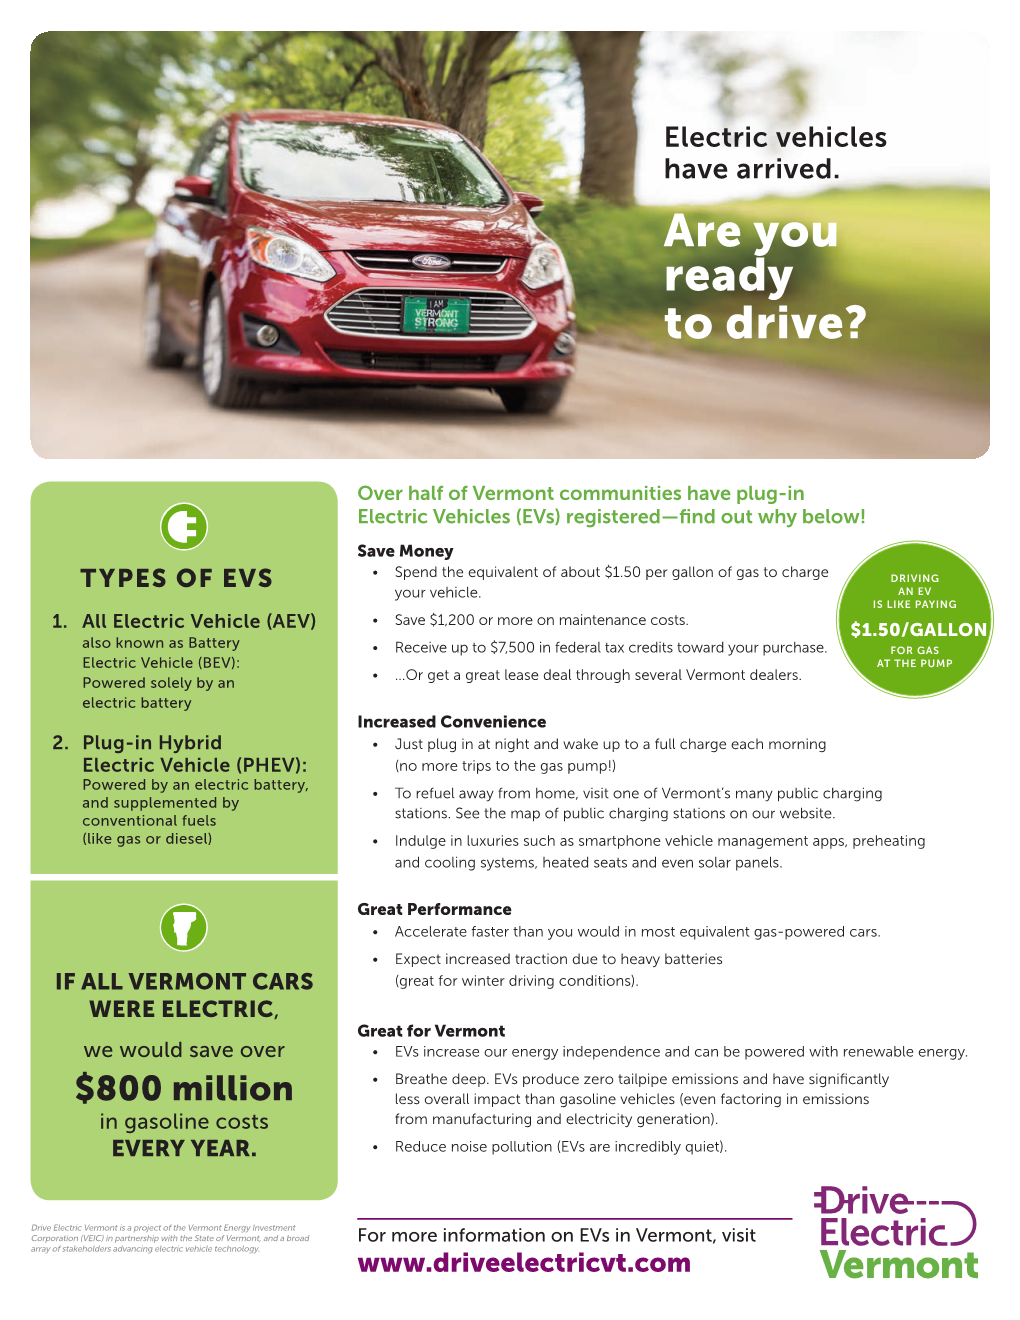 Drive Electric Vermont EV Fact Sheet